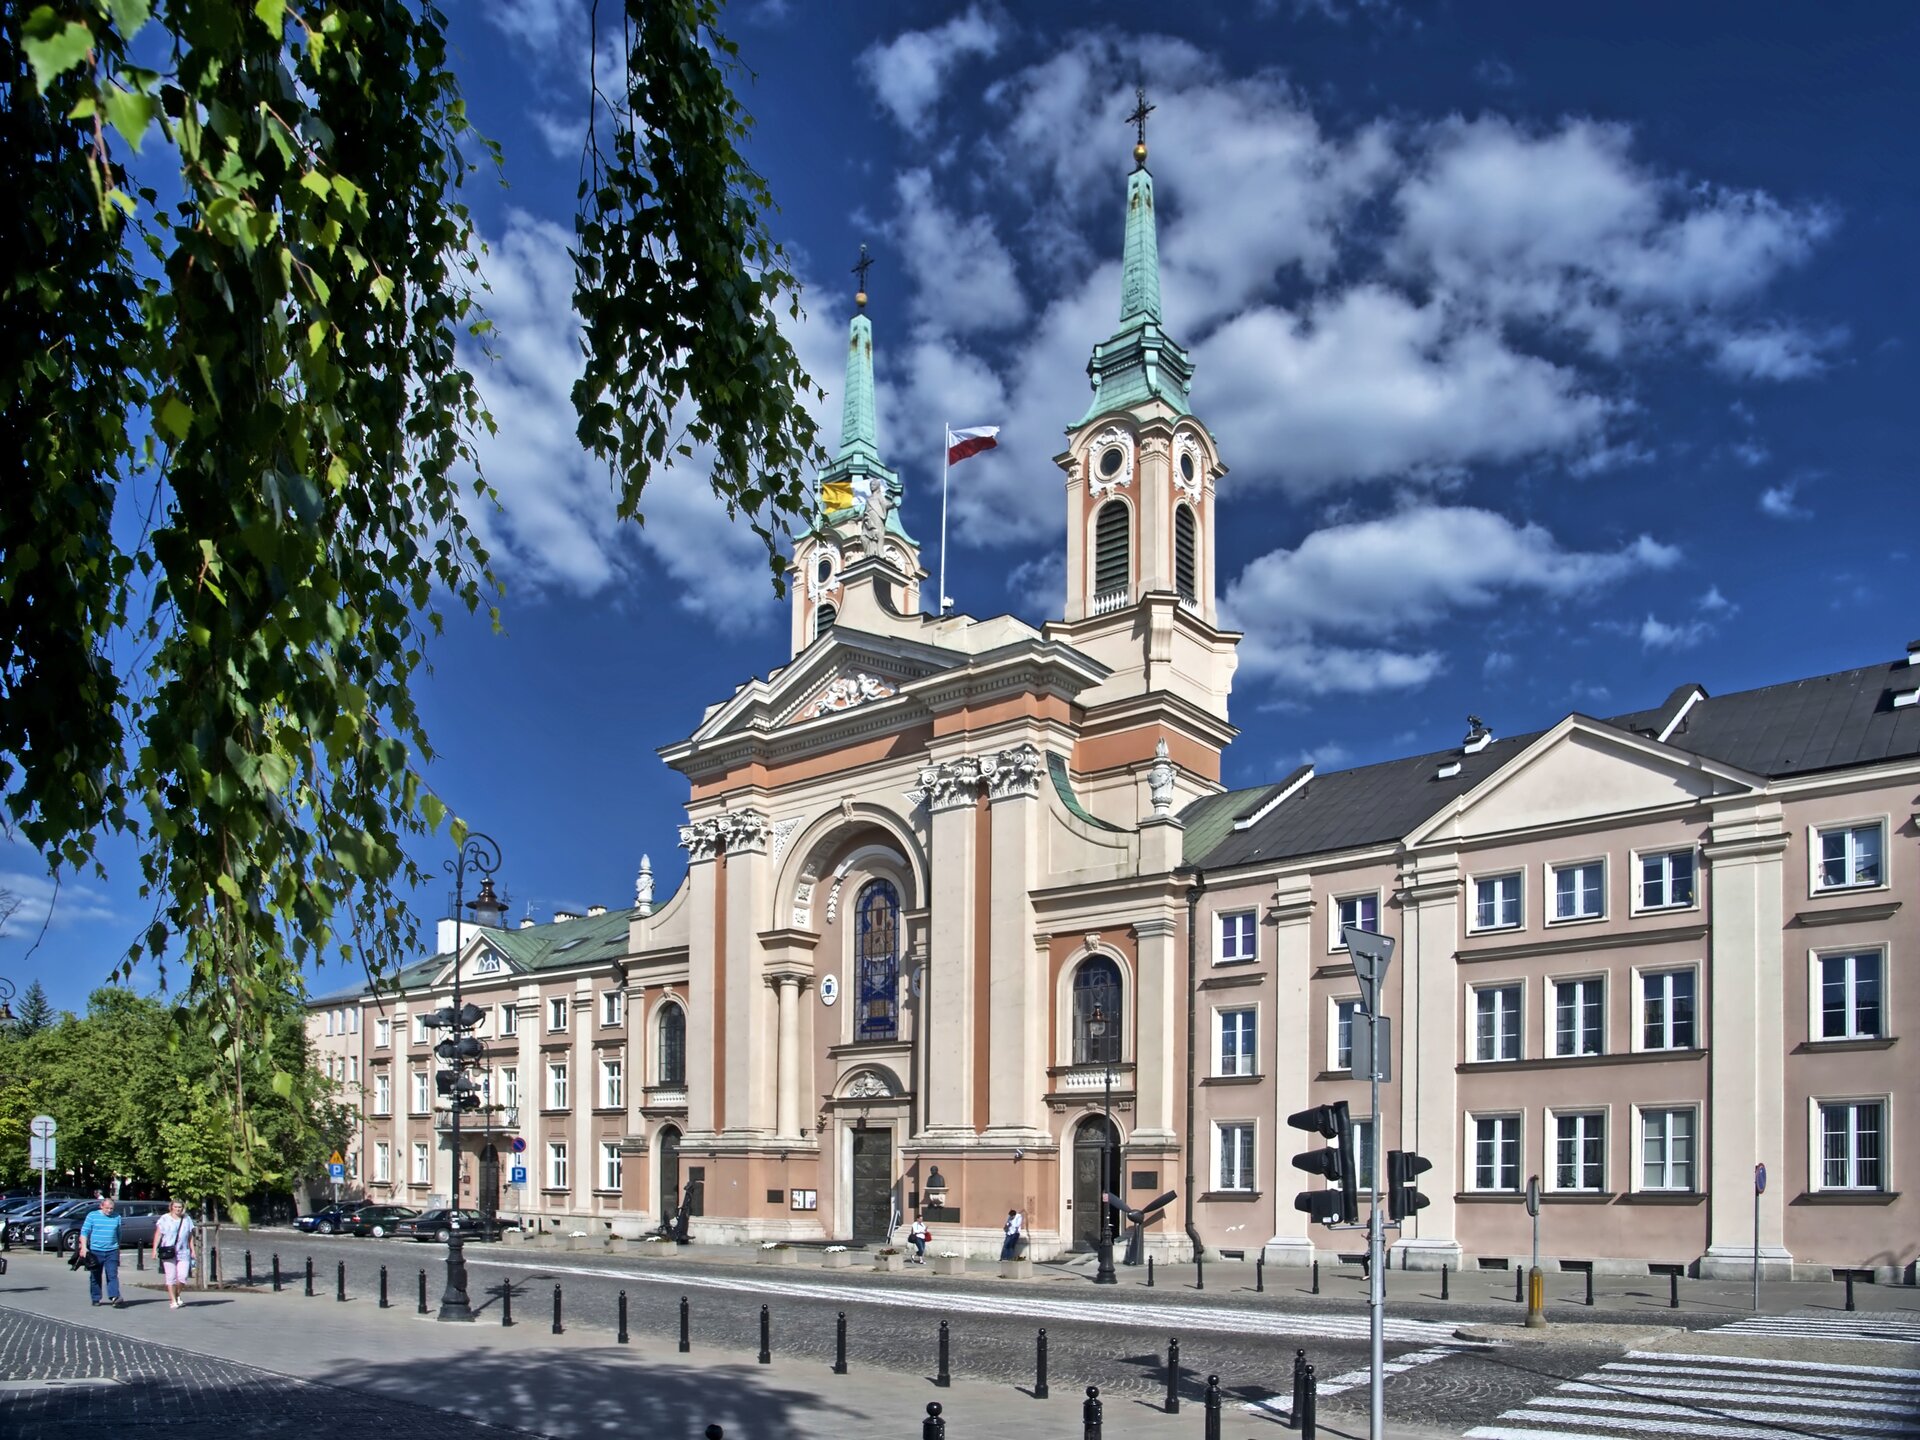 Fotografia przedstawiająca Kościół pijarów w Warszawie, dziś Katedra Polowa Wojska Polskiego, 1758–1769. Budynek ma jasną elewację i strzeliste dwie wieże zakończone krzyżami. Na dachu znajduje się maszt z flagą Polski.